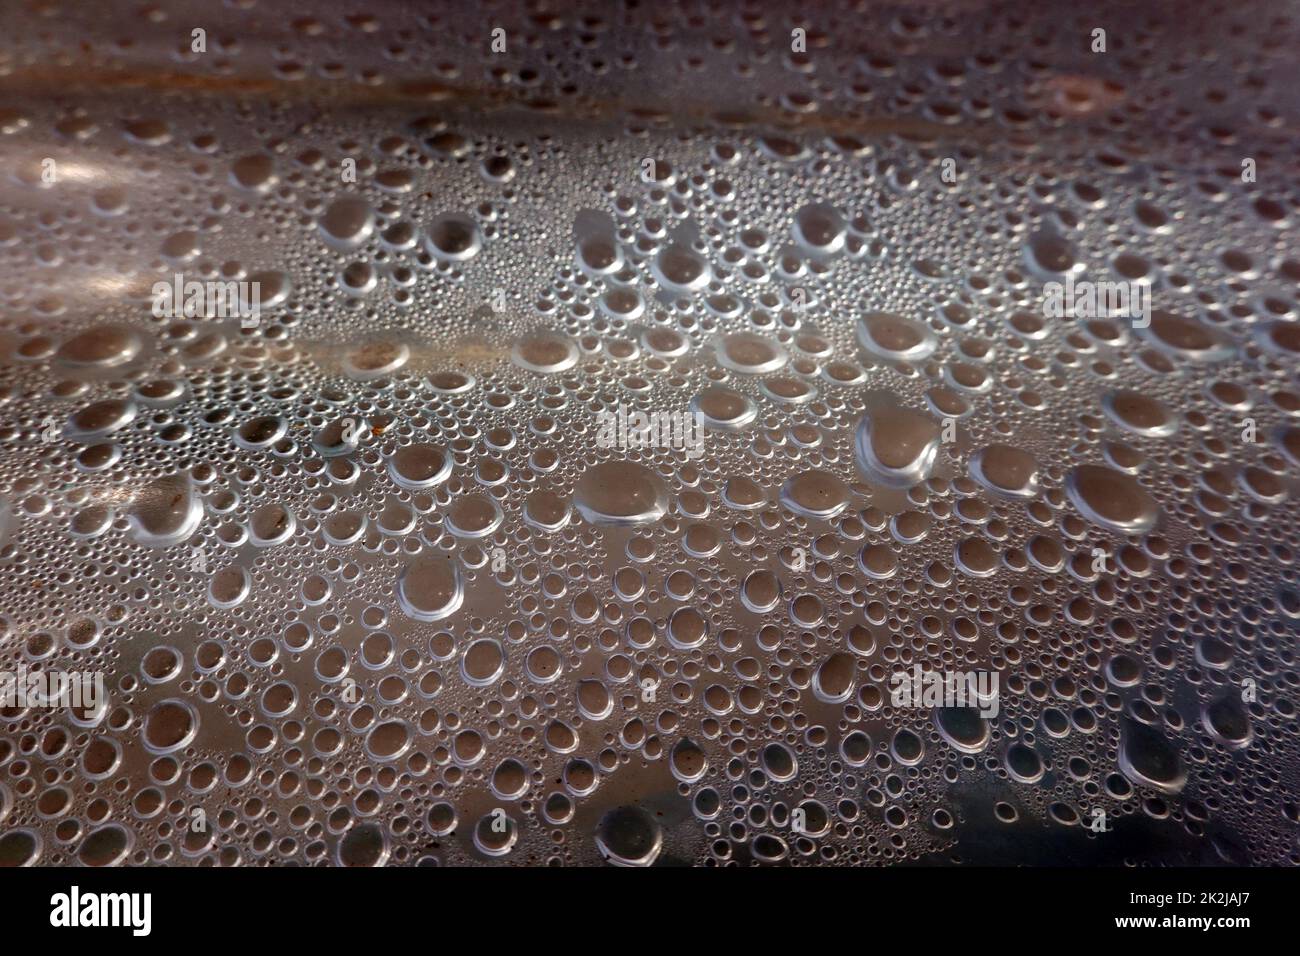 Kondenswasser-Tropfen bilden ein abstraktes Muster unter einer Plastikfolie Stock Photo